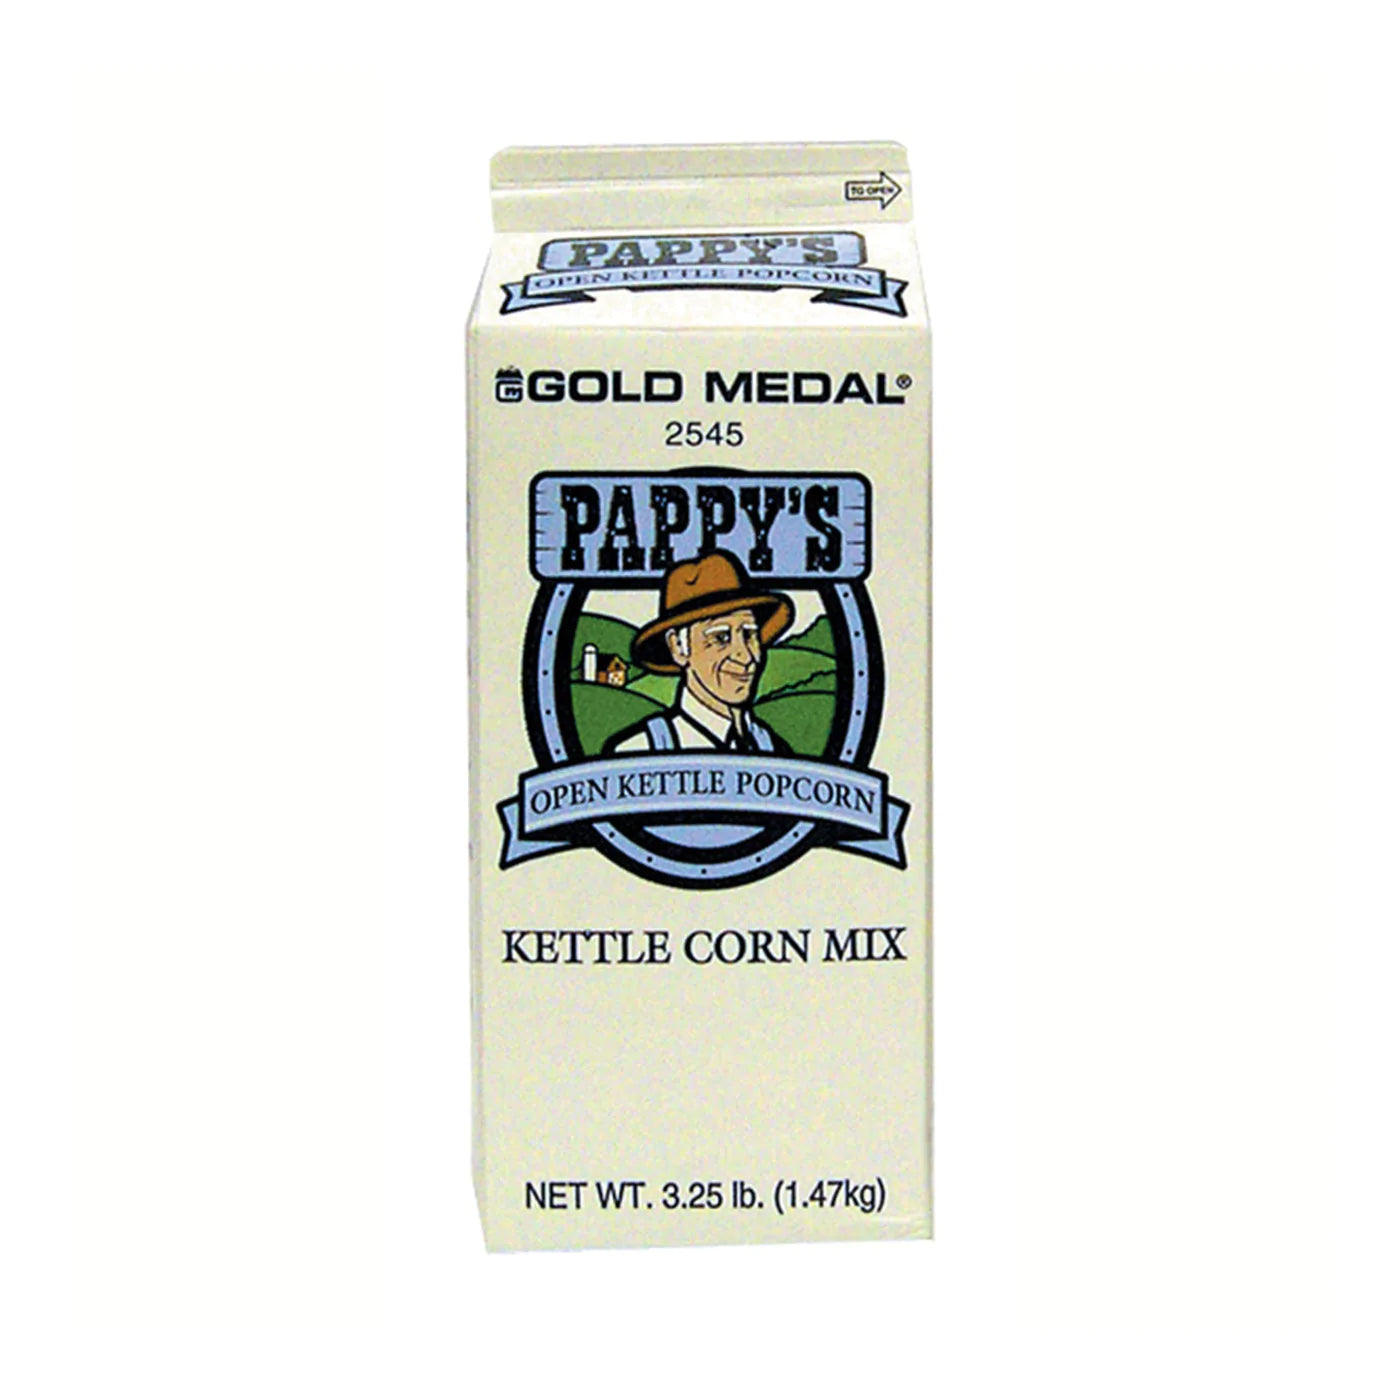 Pappy's Kettle Corn Mix 3.25-lb. carton - Case Count: 6